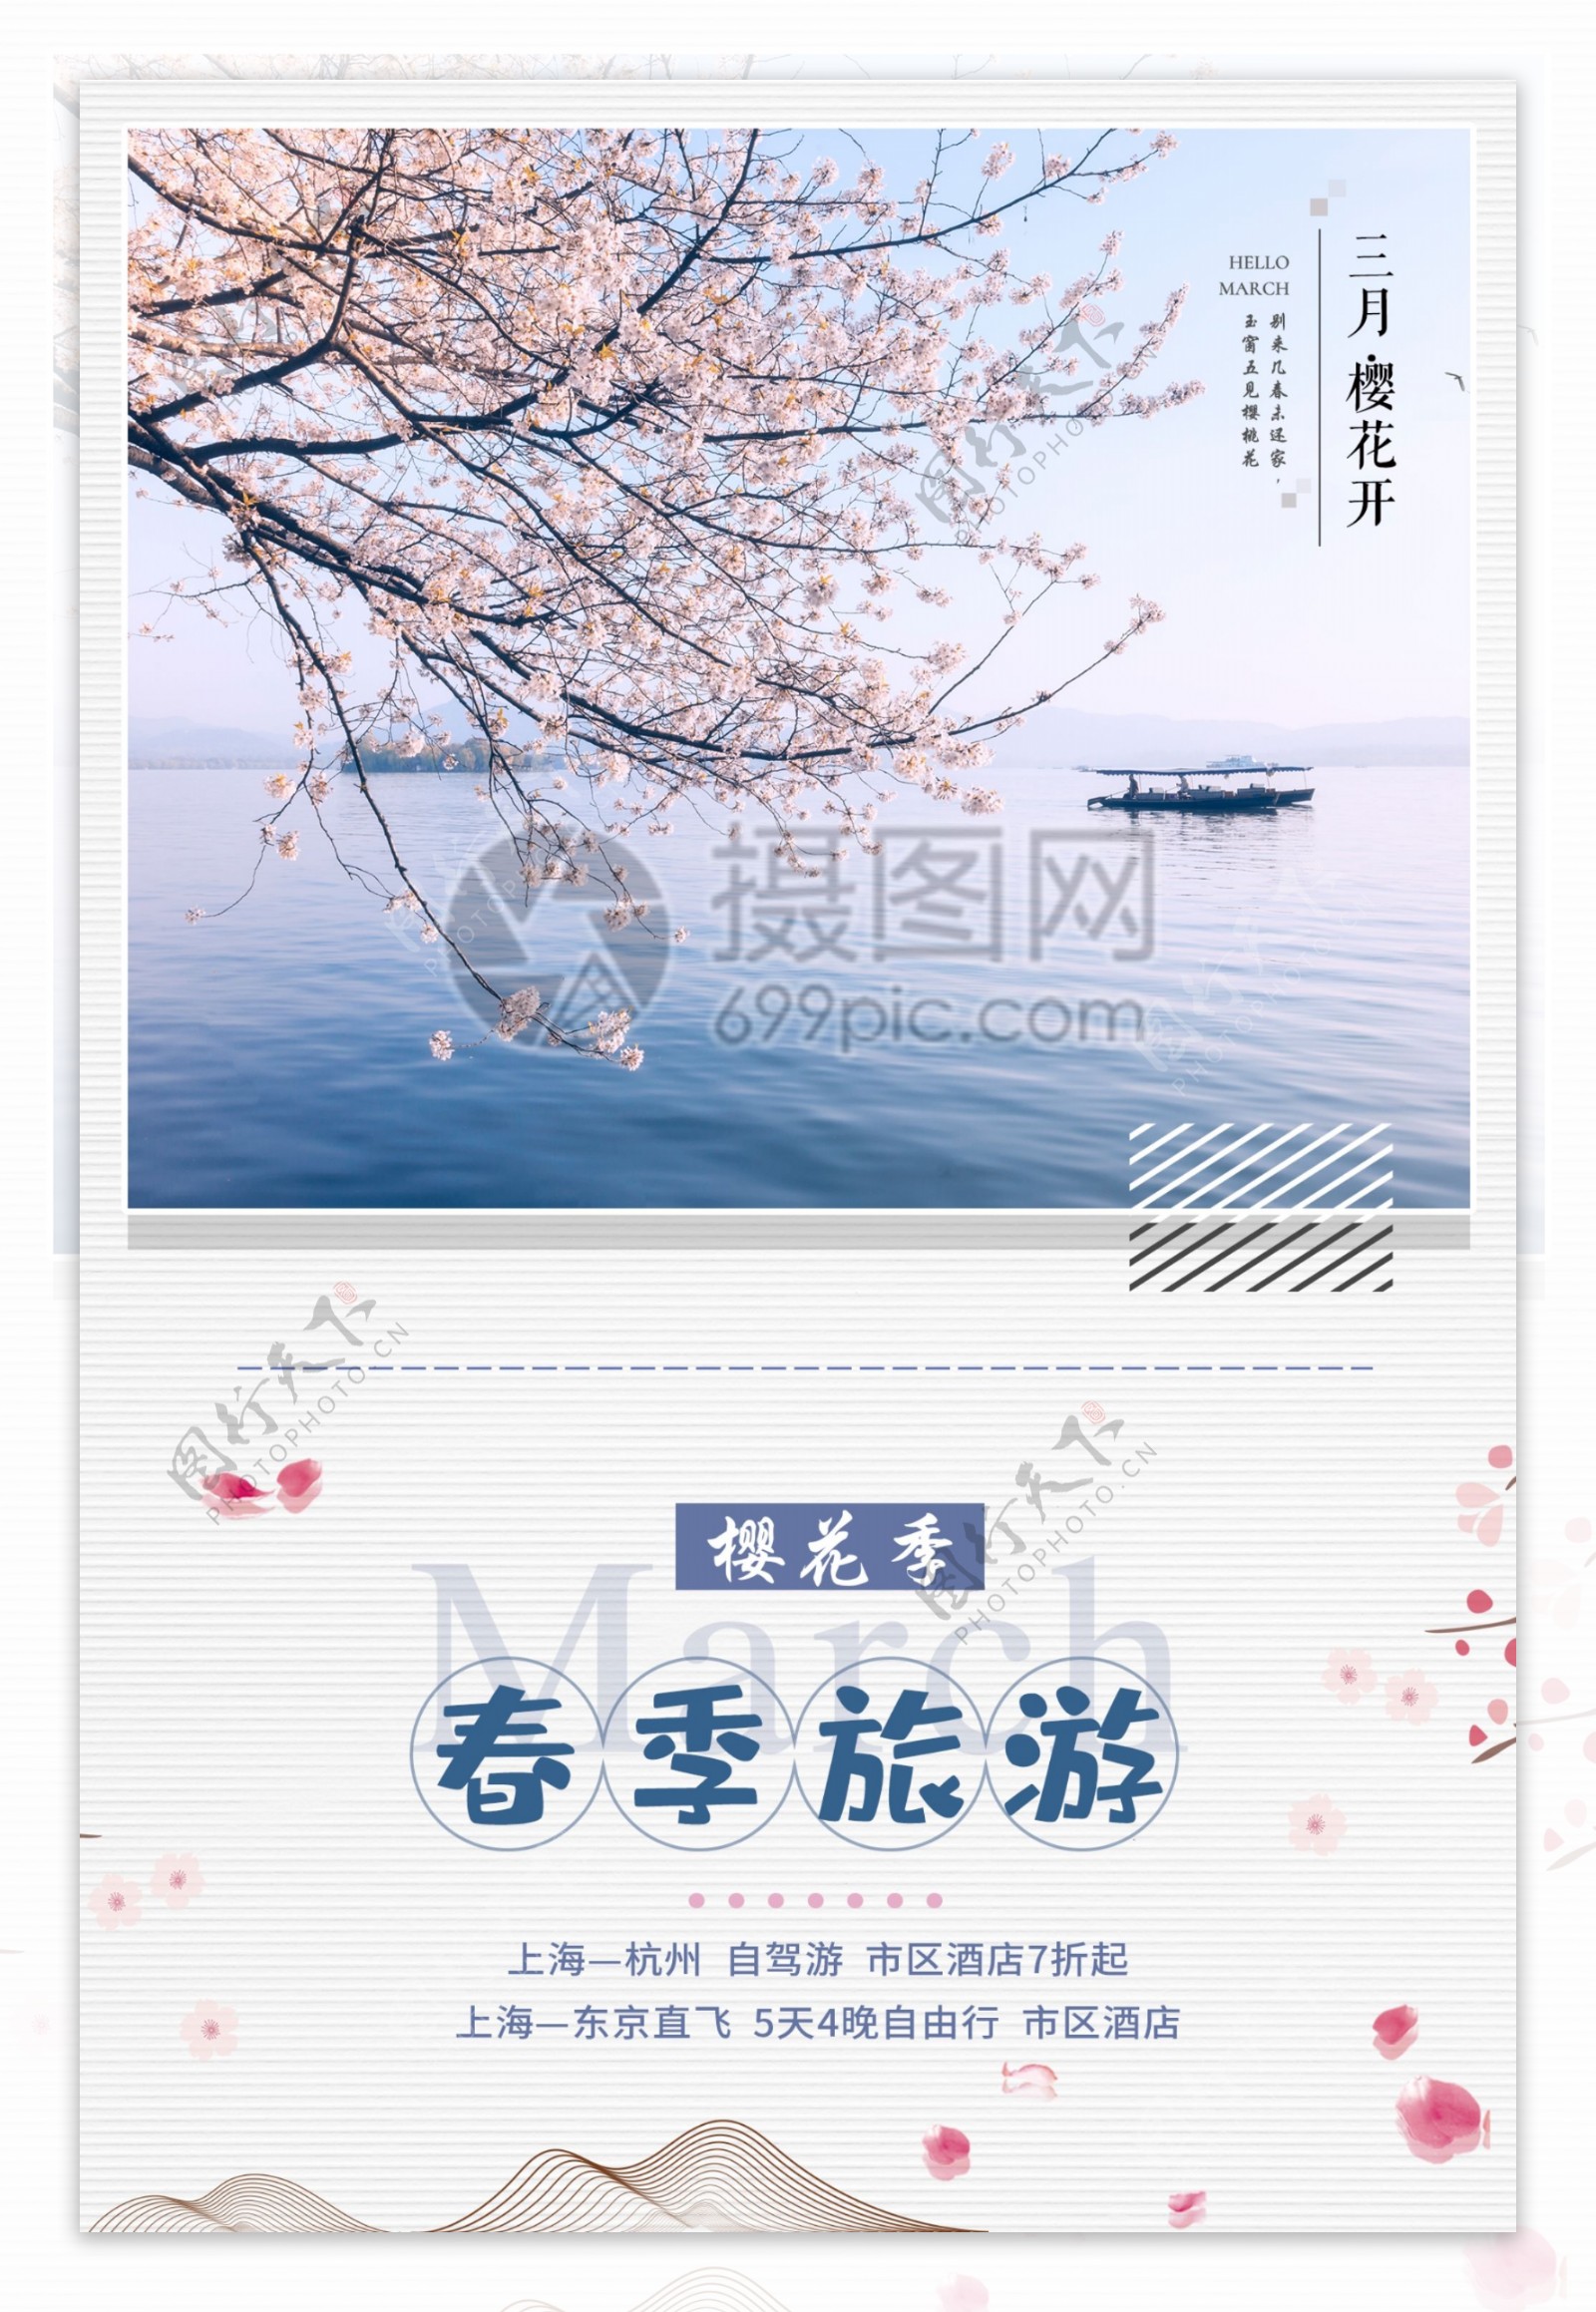 小清新春季旅游海报设计